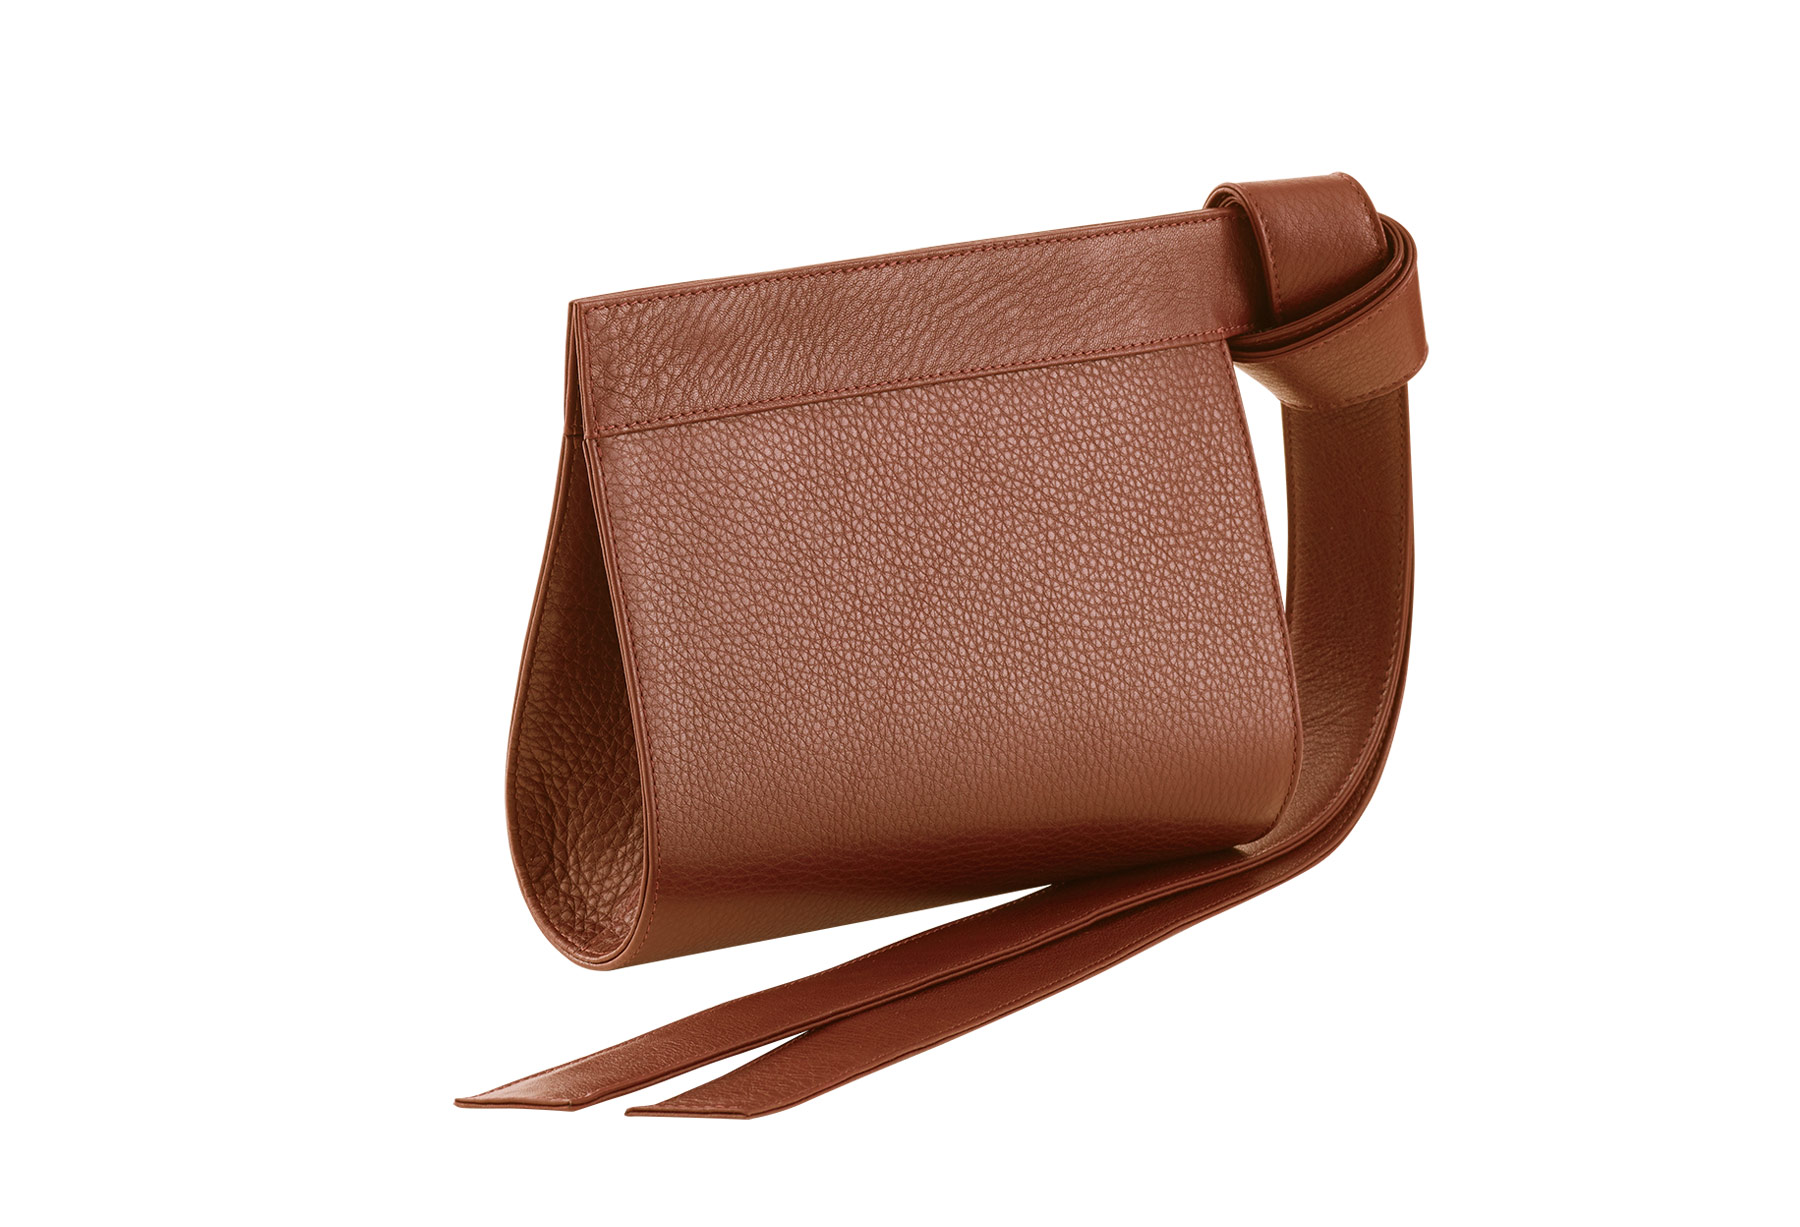 TAPE XS clutch bag in tan calfskin leather | TSATSAS